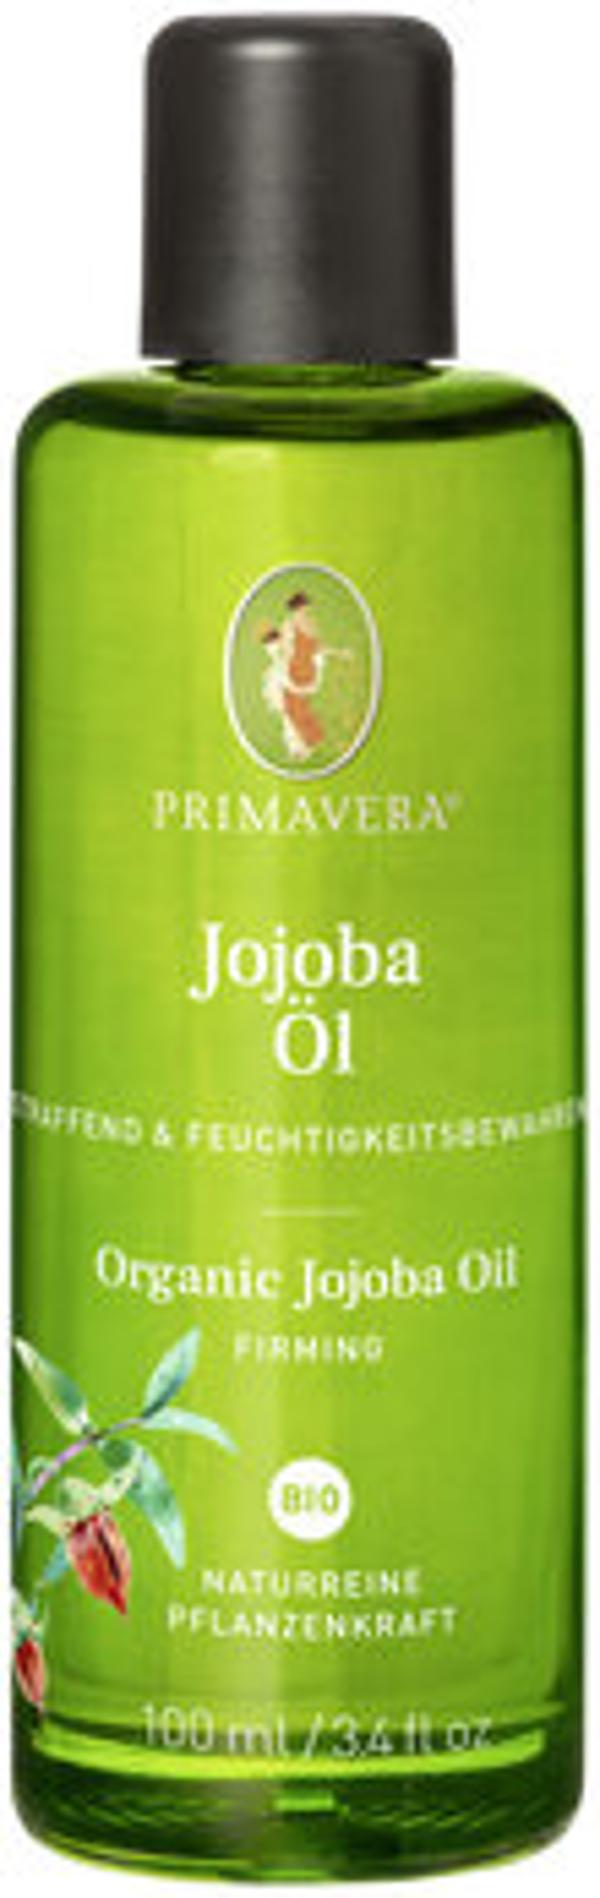 Produktfoto zu Jojobaöl Primavera 100ml